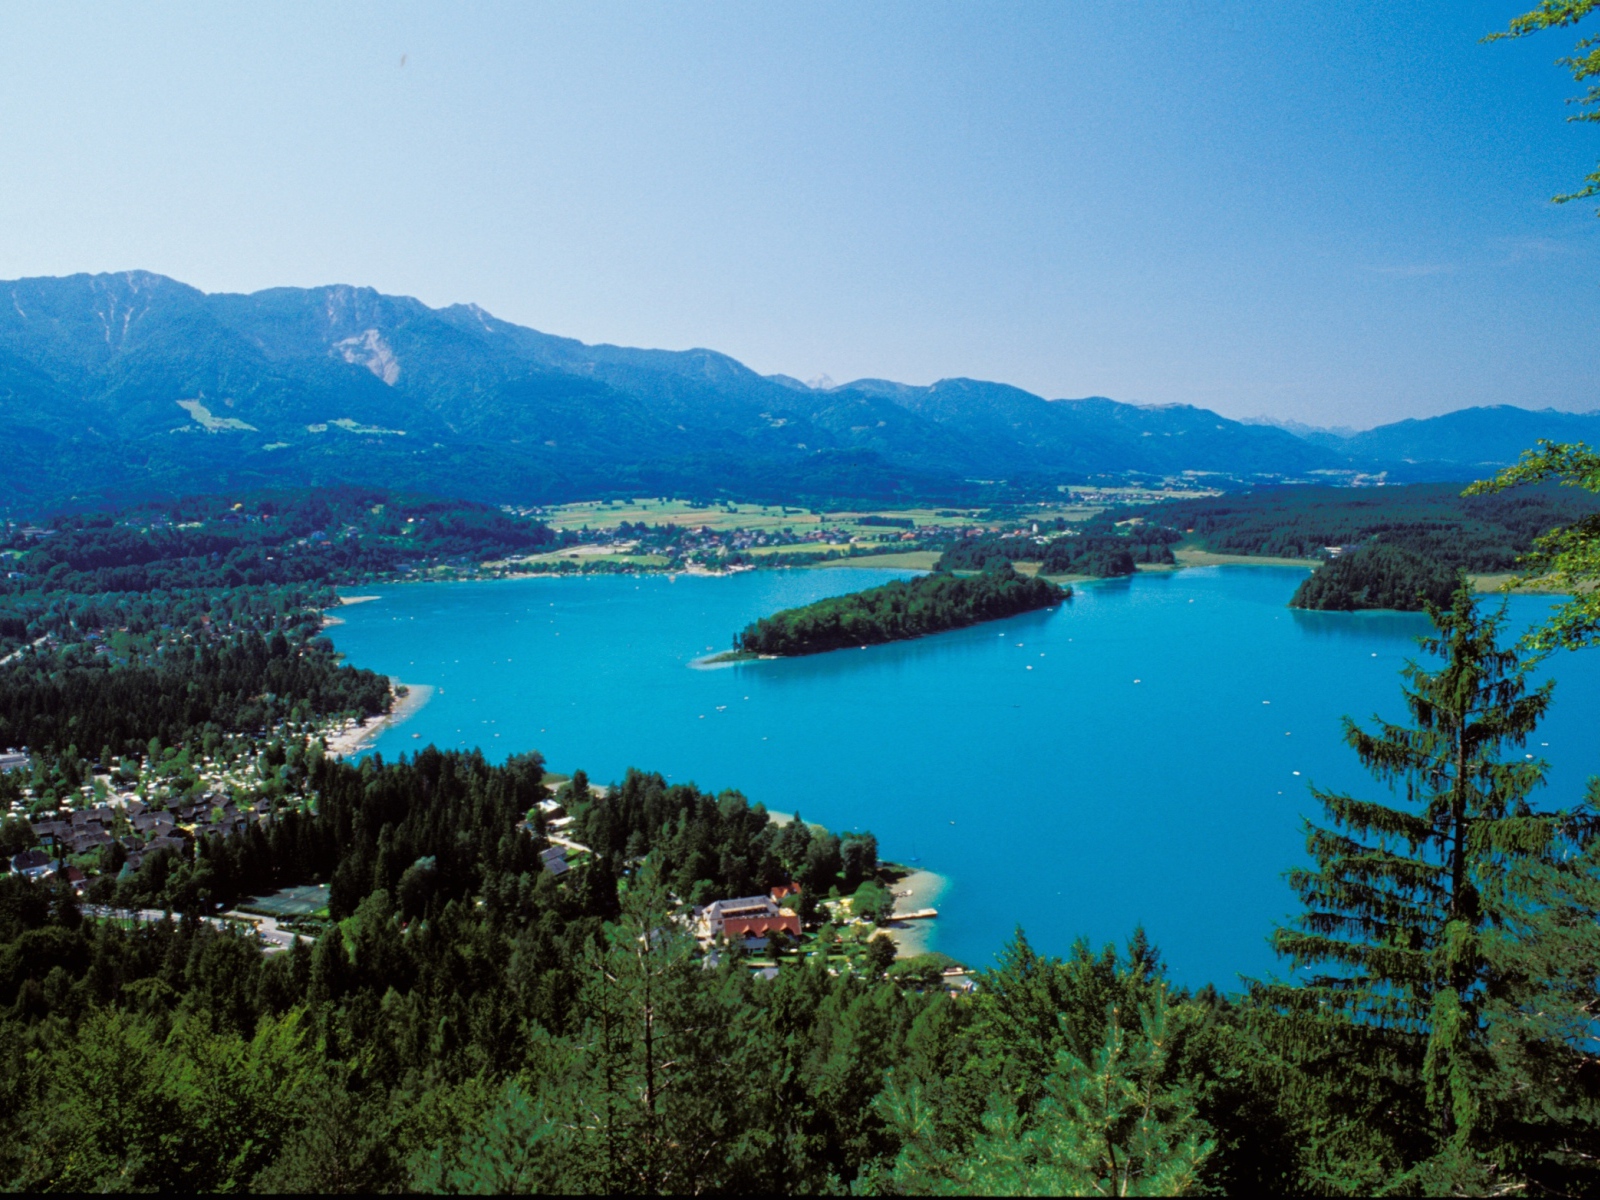 Beautiful lake in the resort Faakersee, Austria